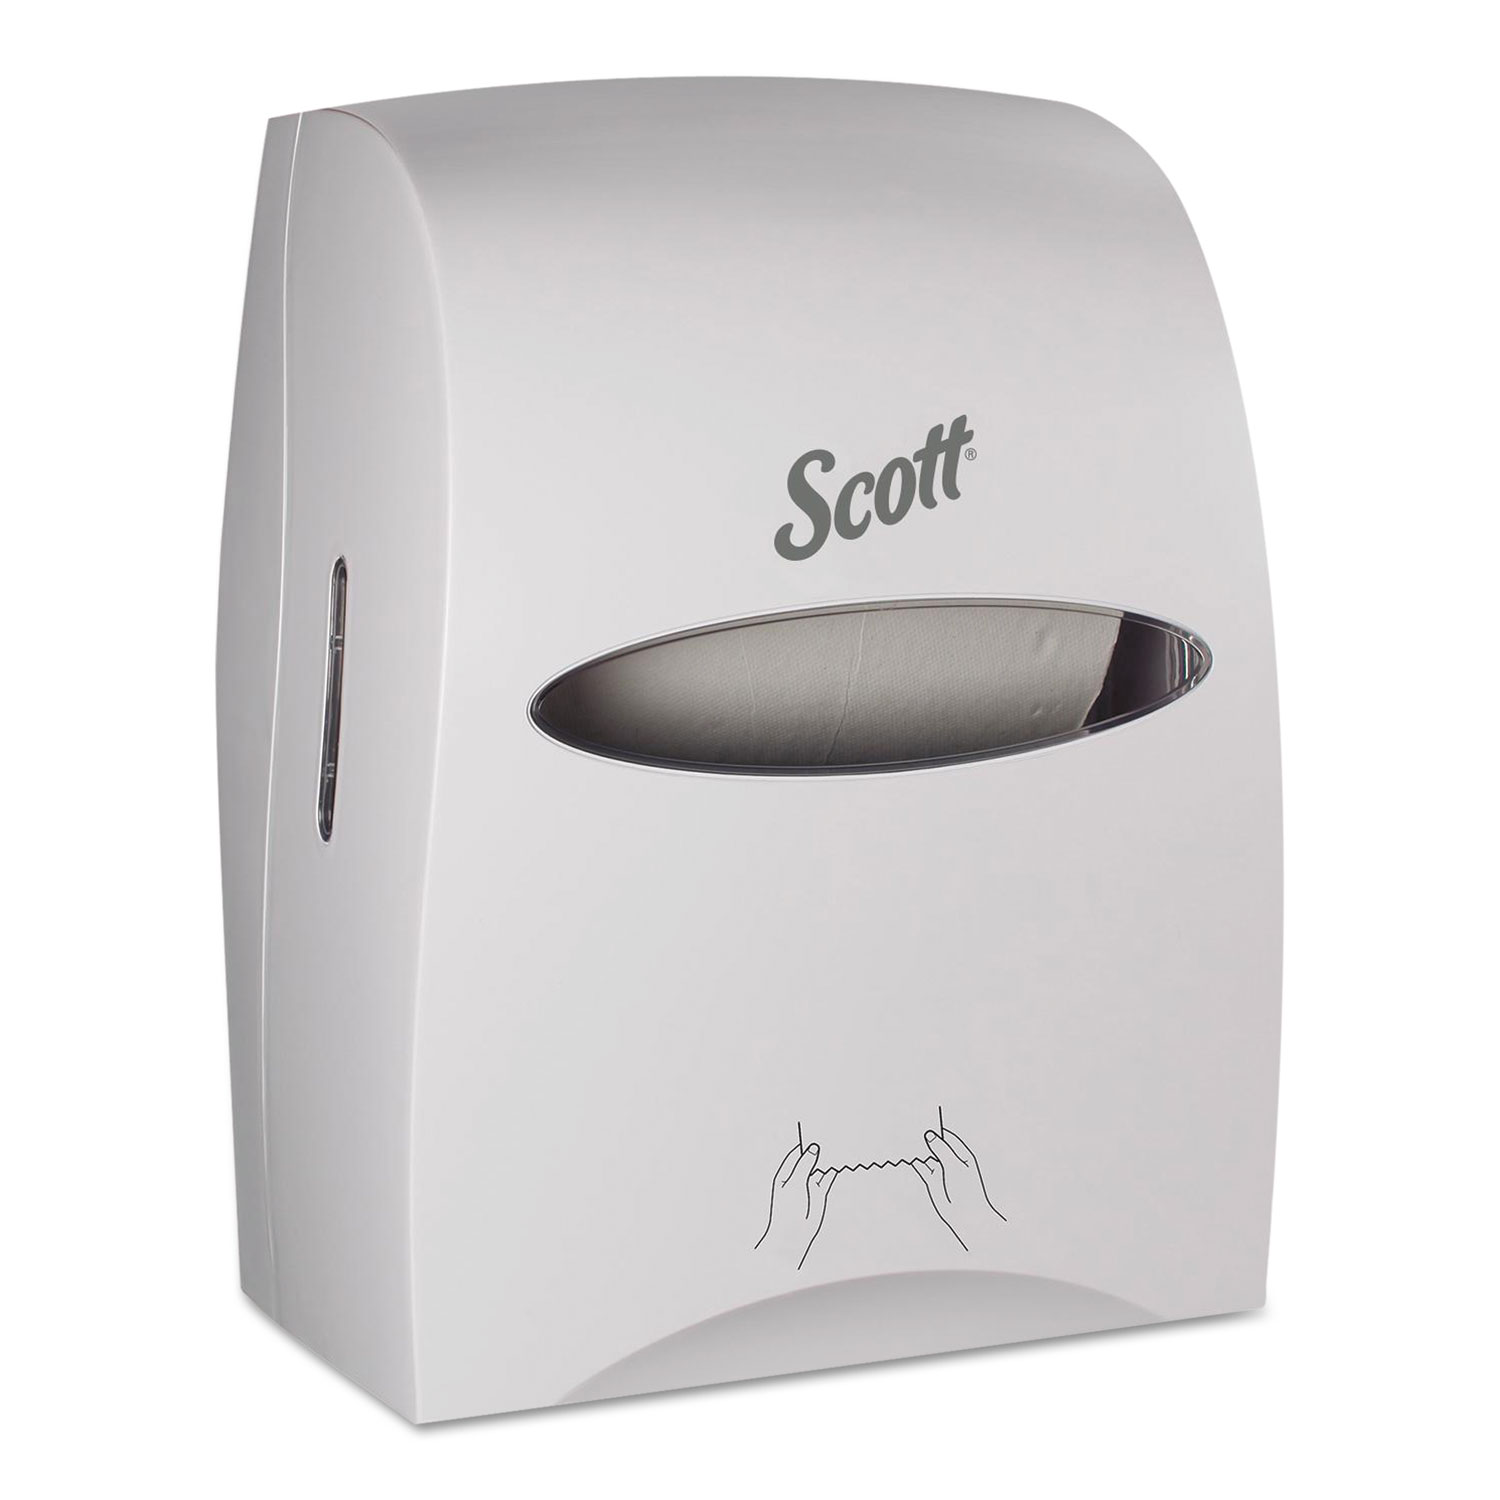  Scott 46254 Essential Manual Hard Roll Towel Dispenser, 13.06 x 11 x 16.94, White (KCC46254) 